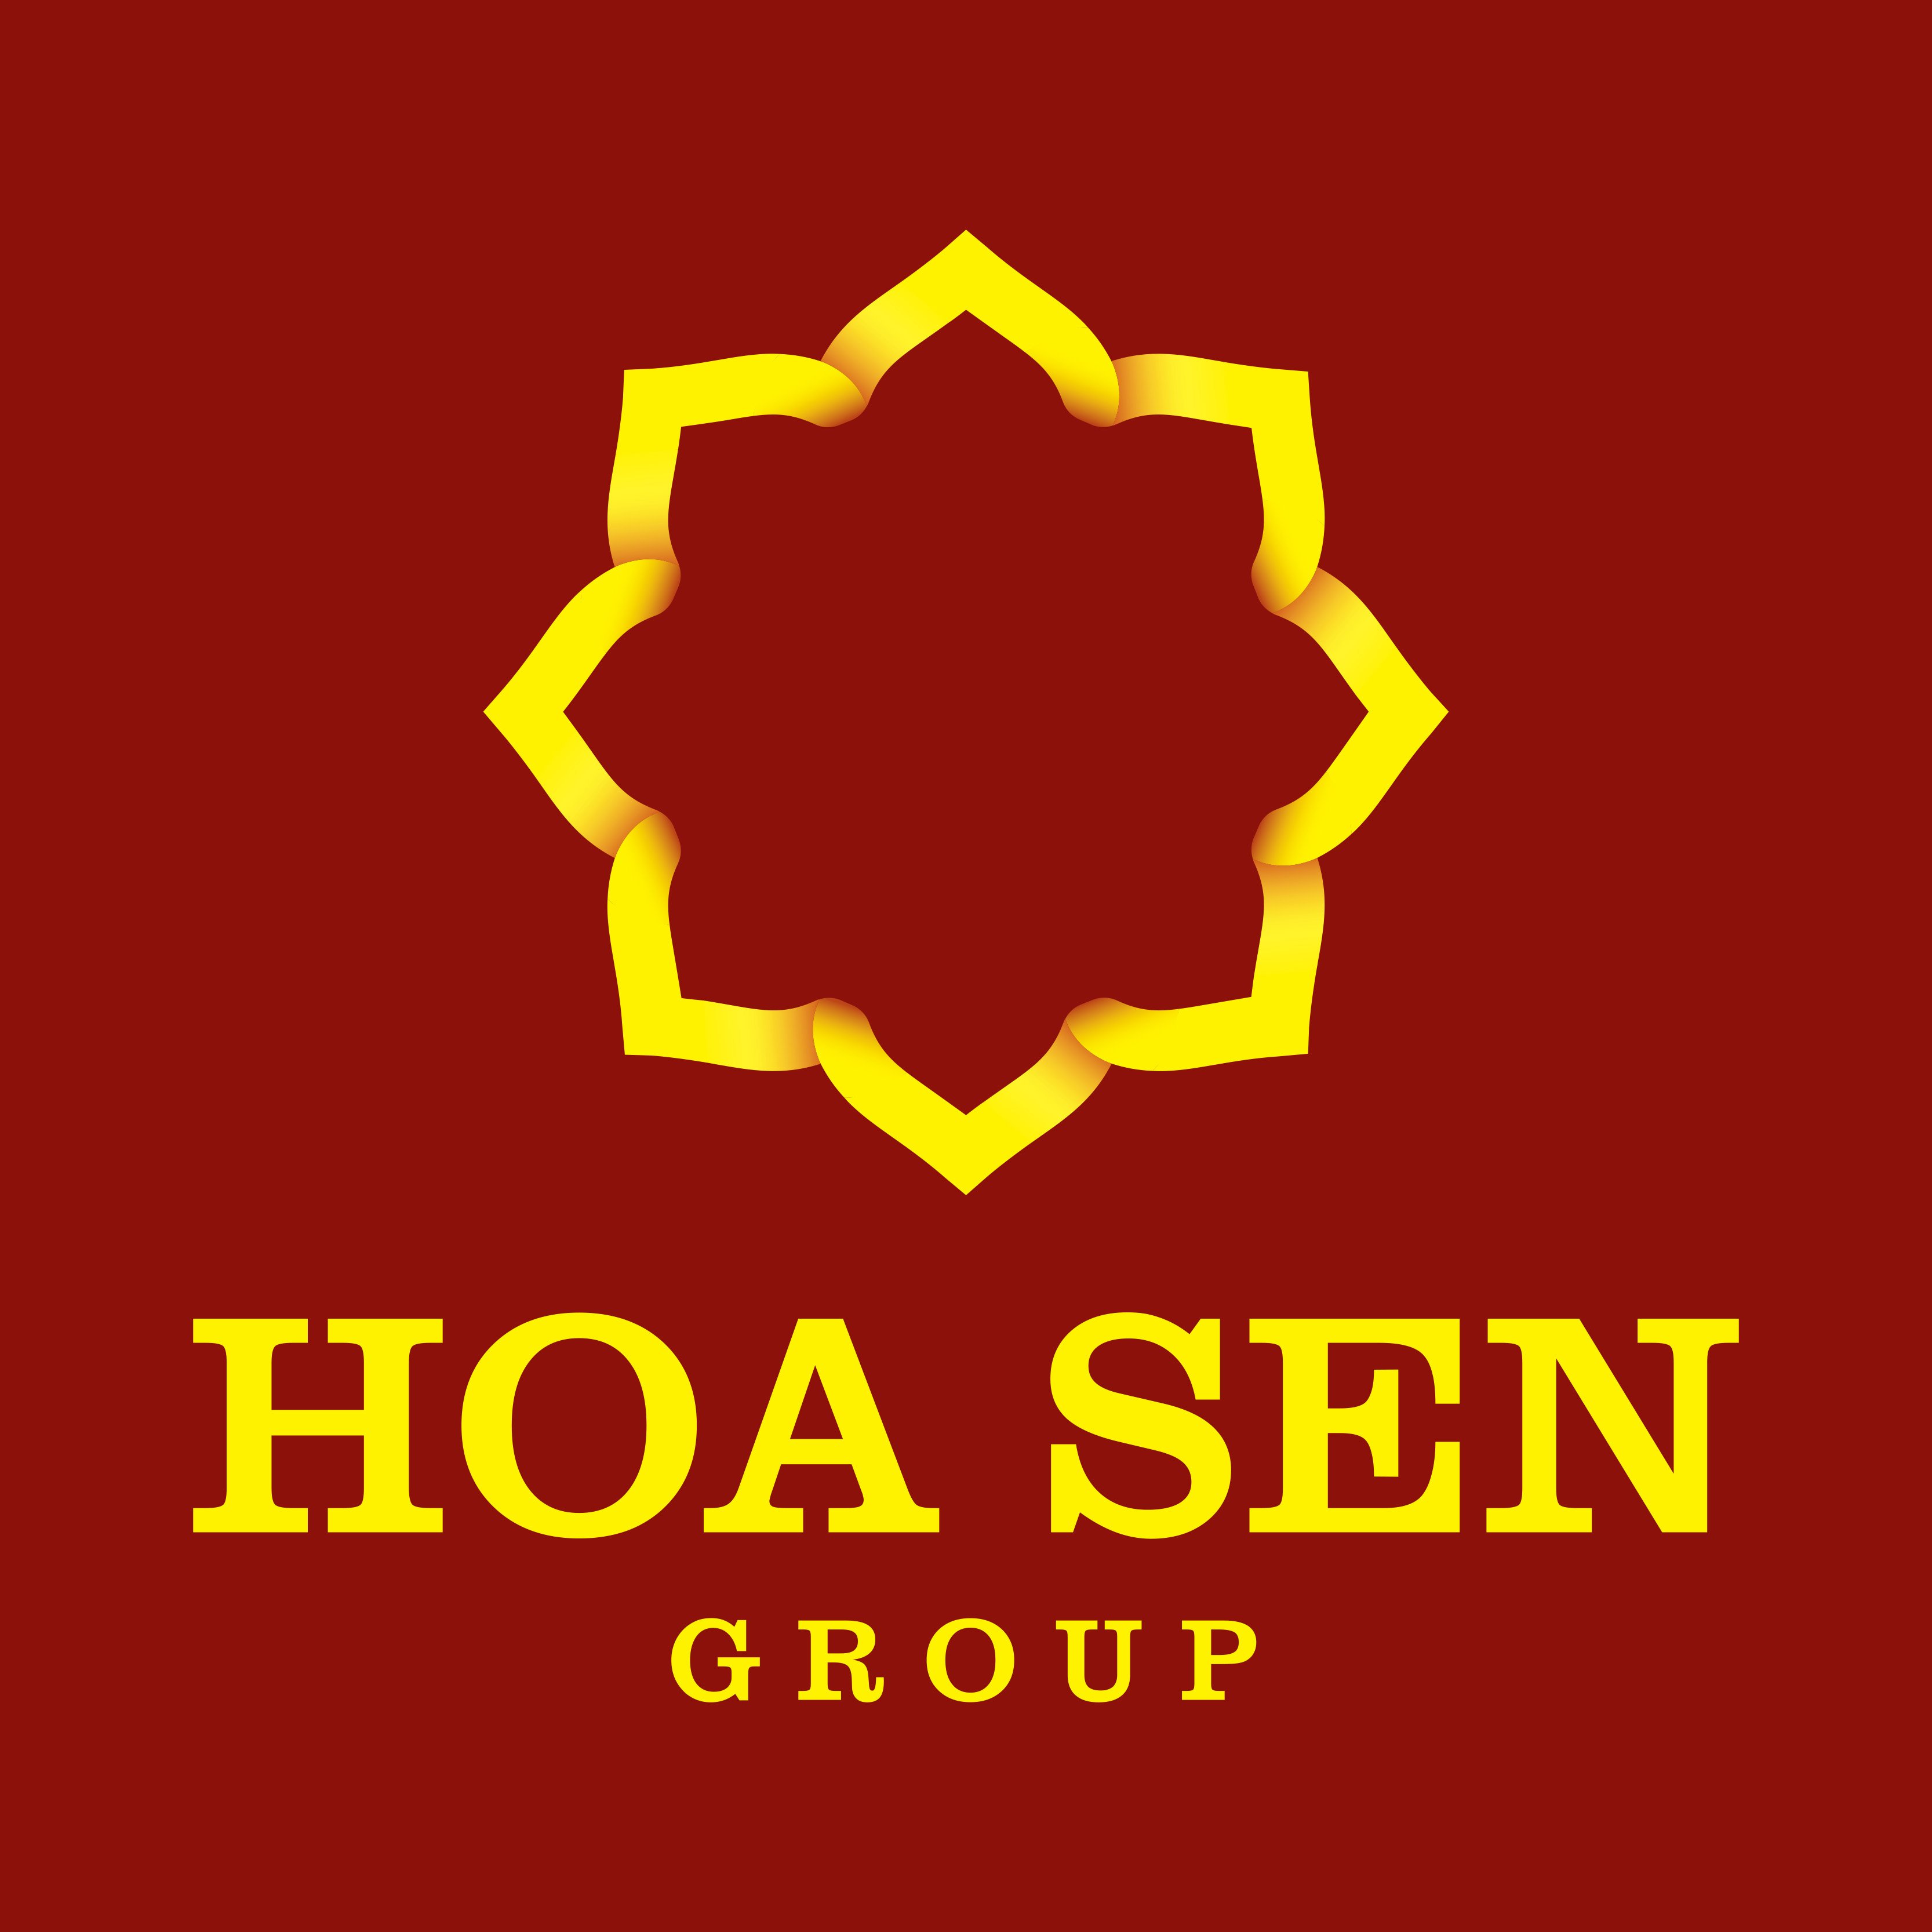 Hoa Sen Group Brand Logo